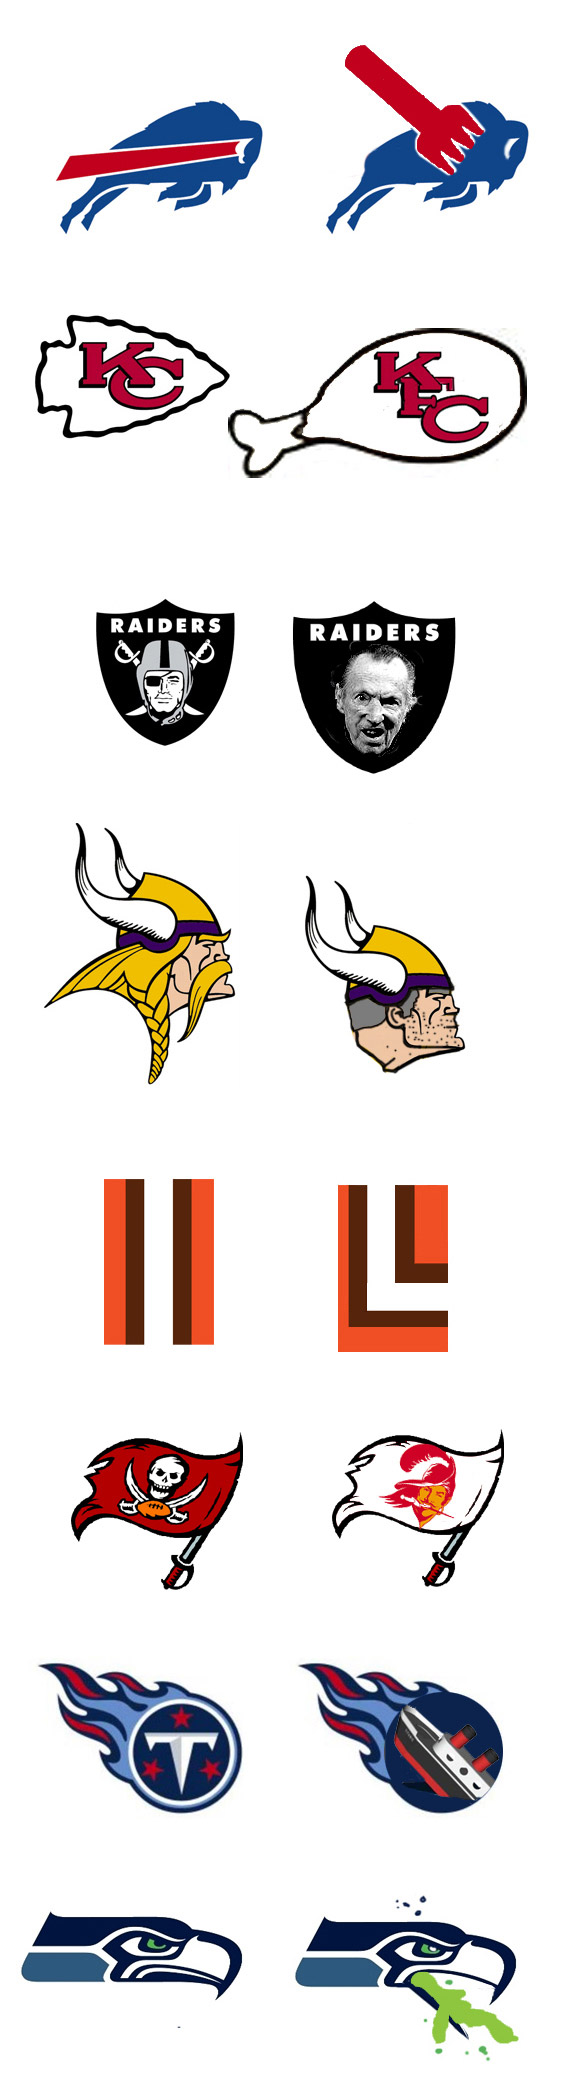 original nfl team logos